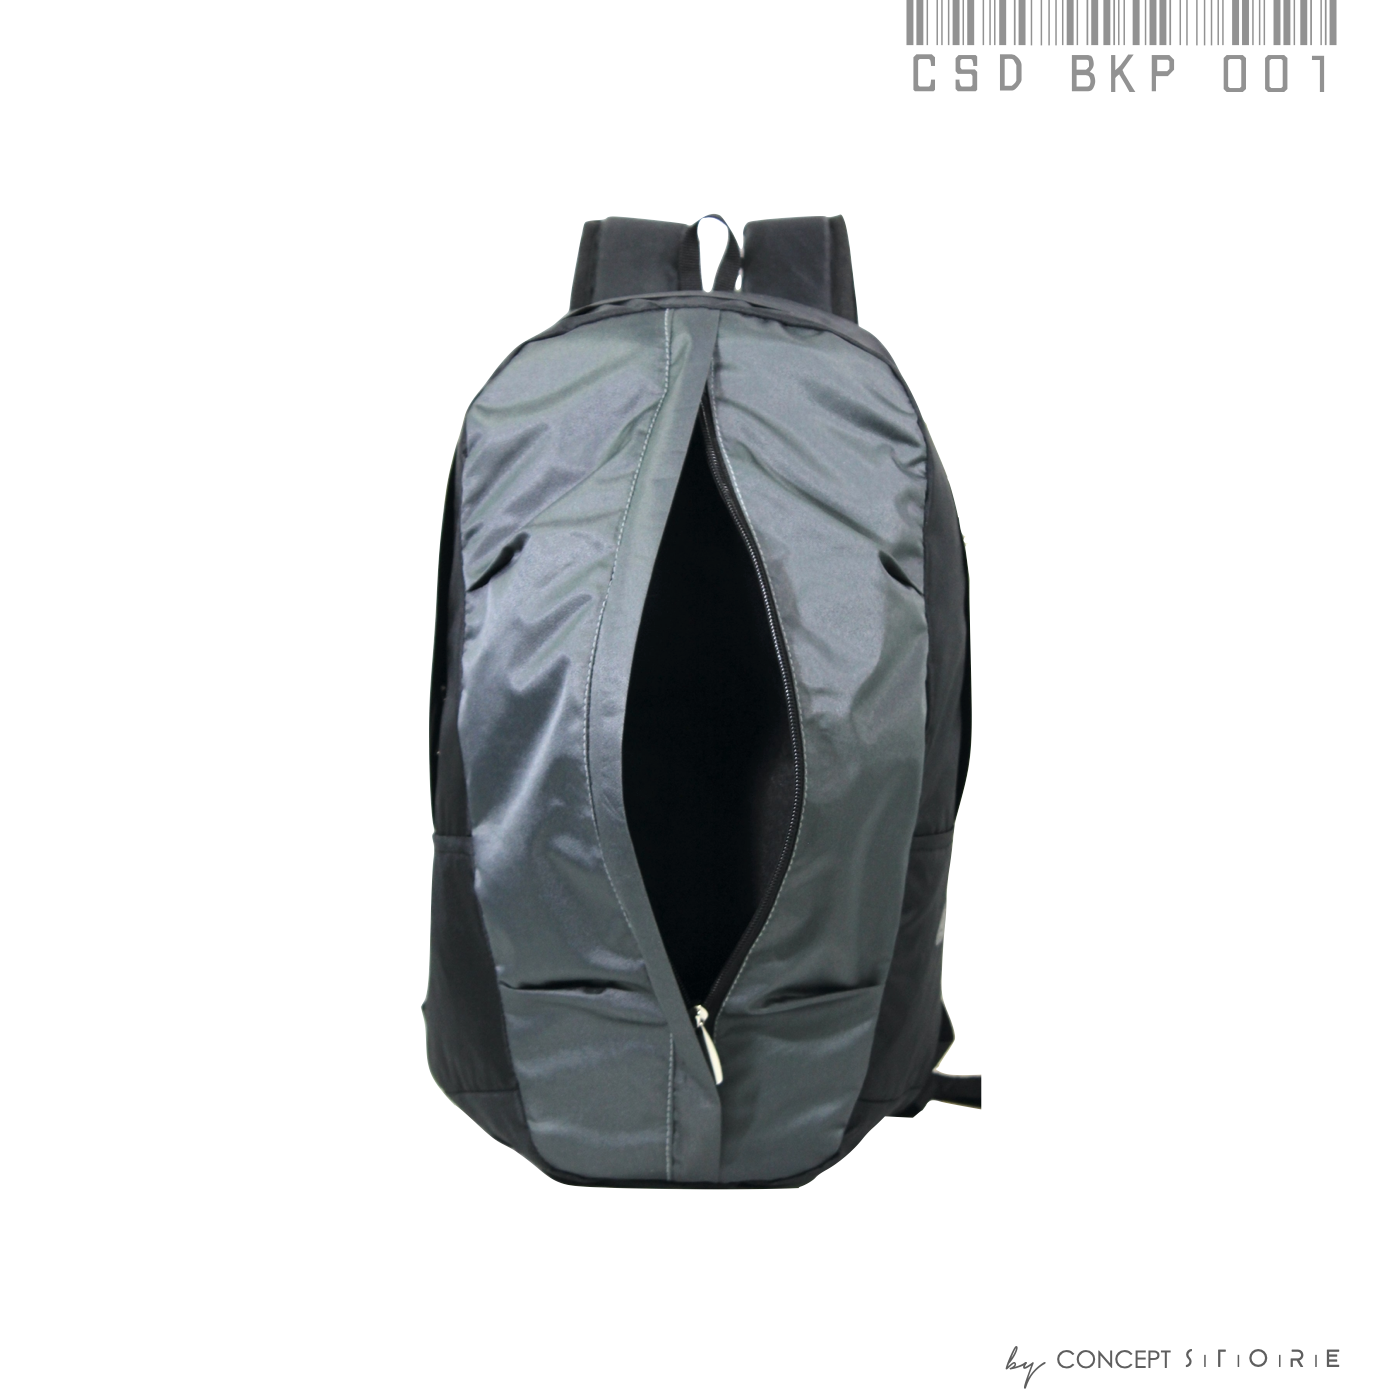 All-Day Neoprene Backpack